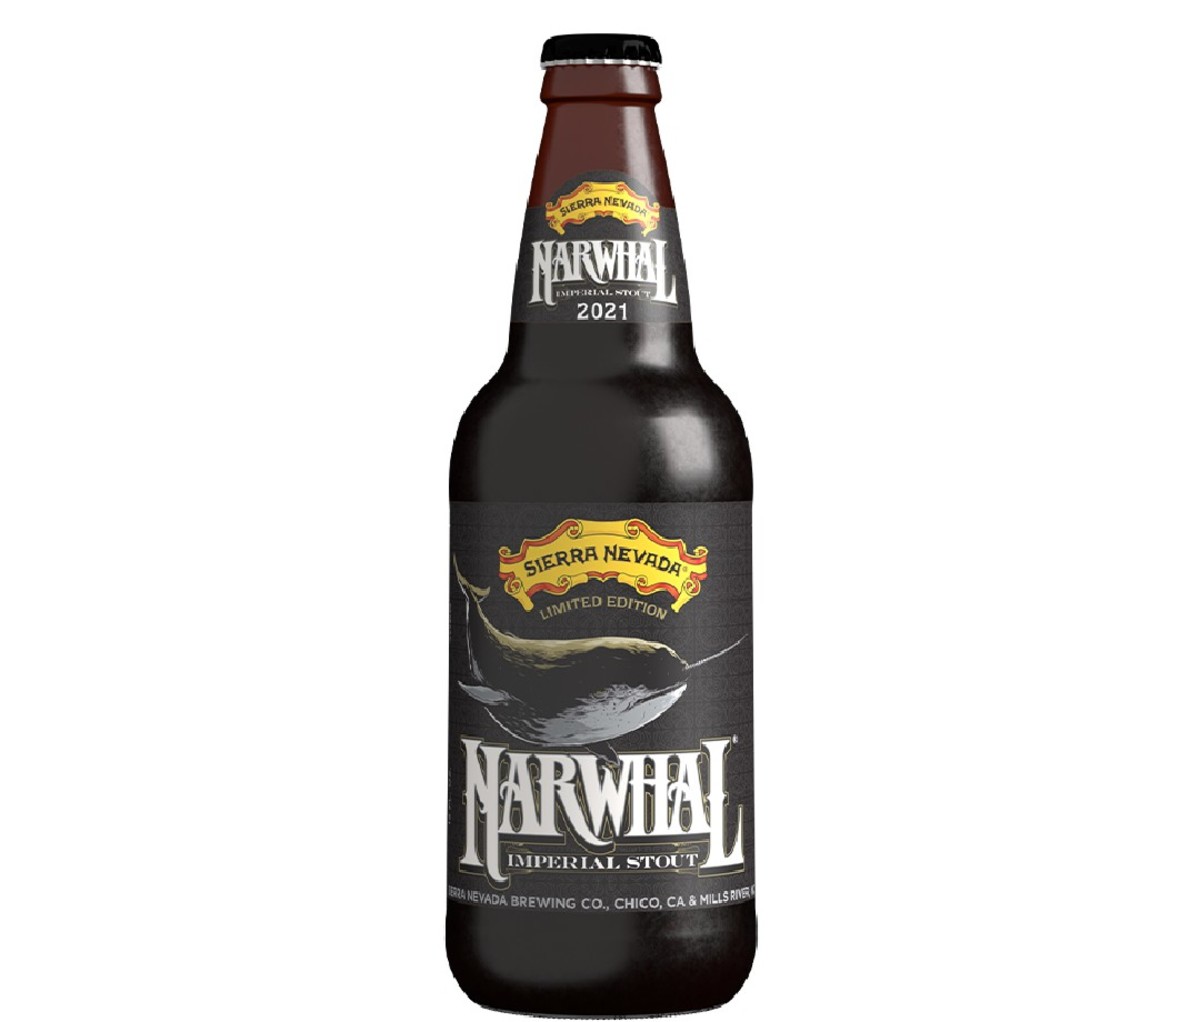 Bottle of Sierra Nevada Narwhal